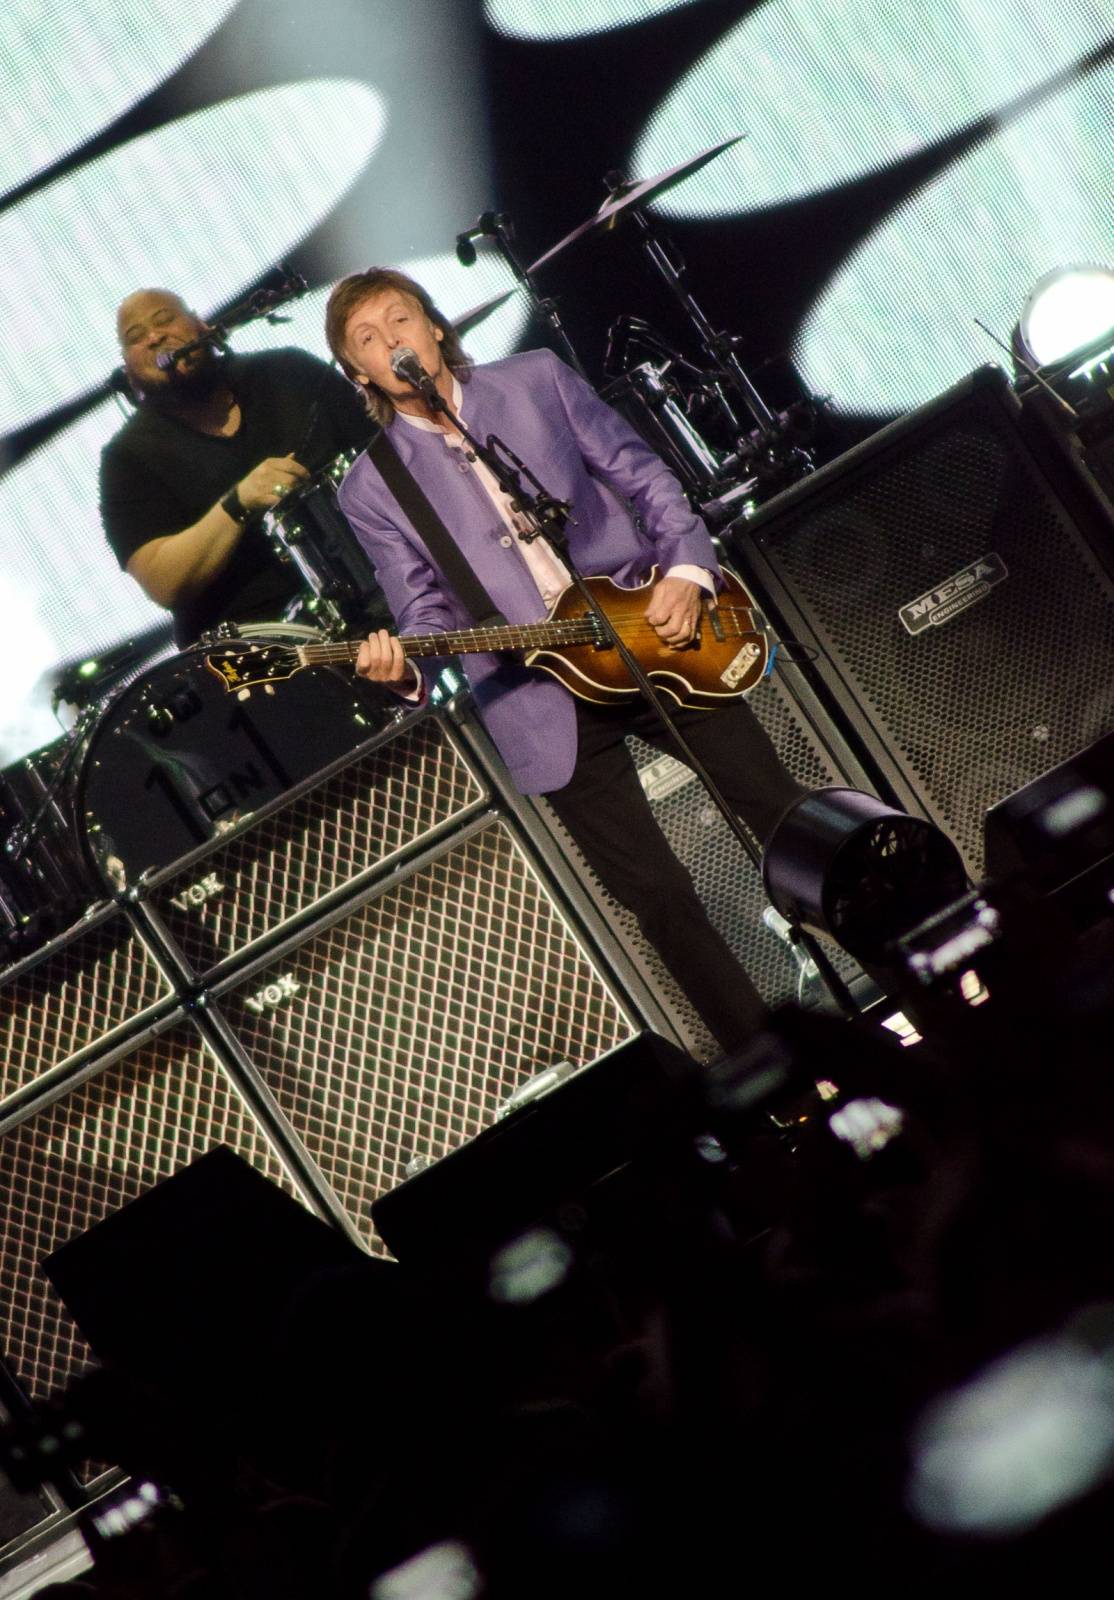 Paul McCartney vyprodal O2 arenu do posledního místečka! Prahou zněli Beatles i sólové hity